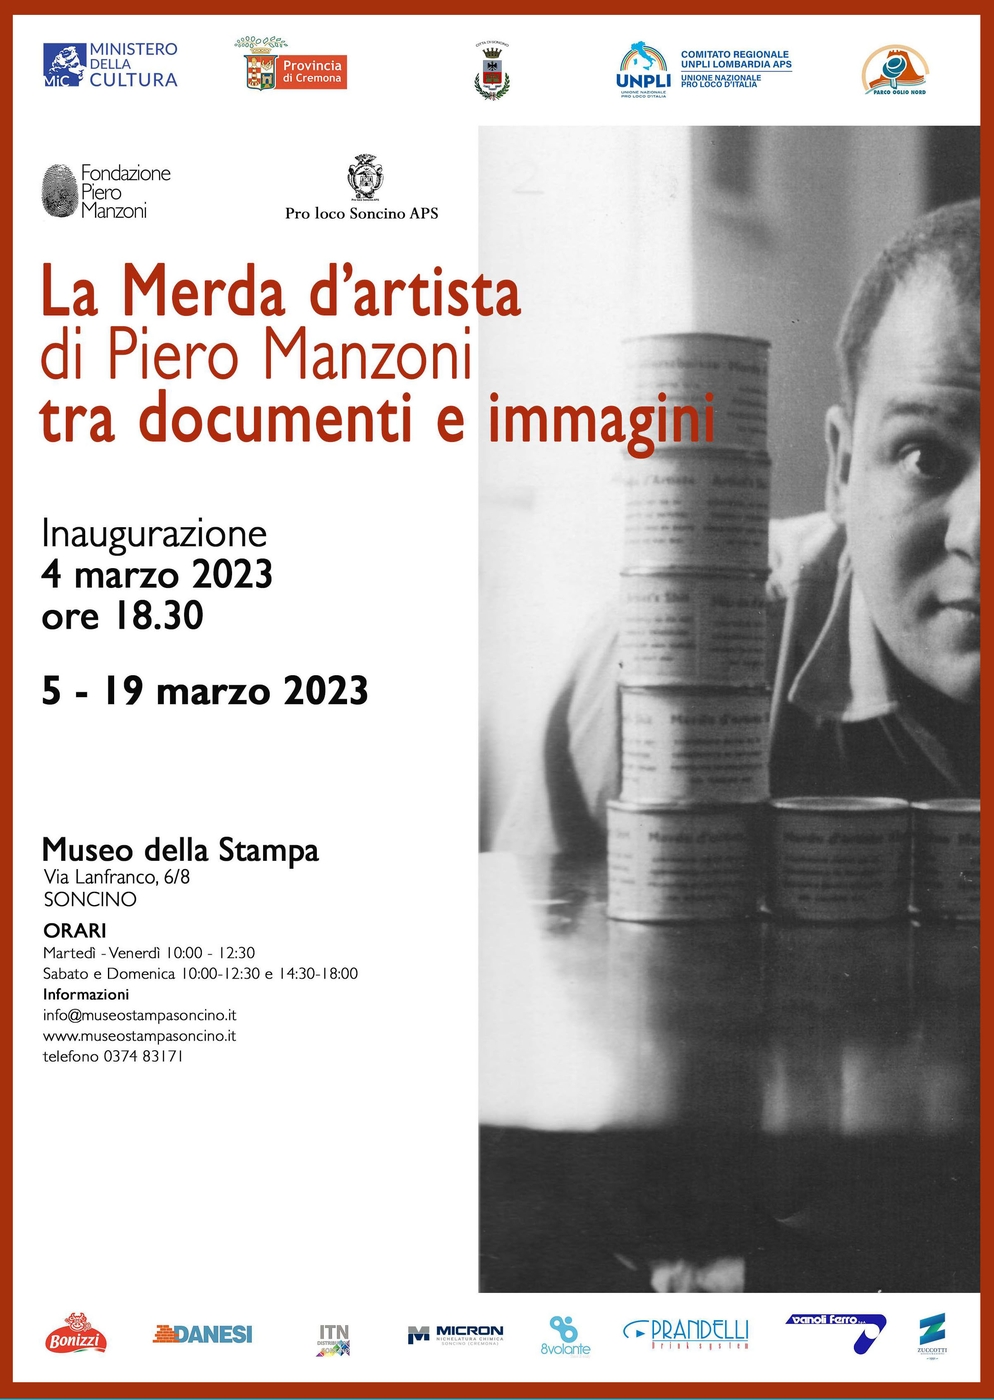 “La Merda d’artista di Piero Manzoni tra documenti e immagini”